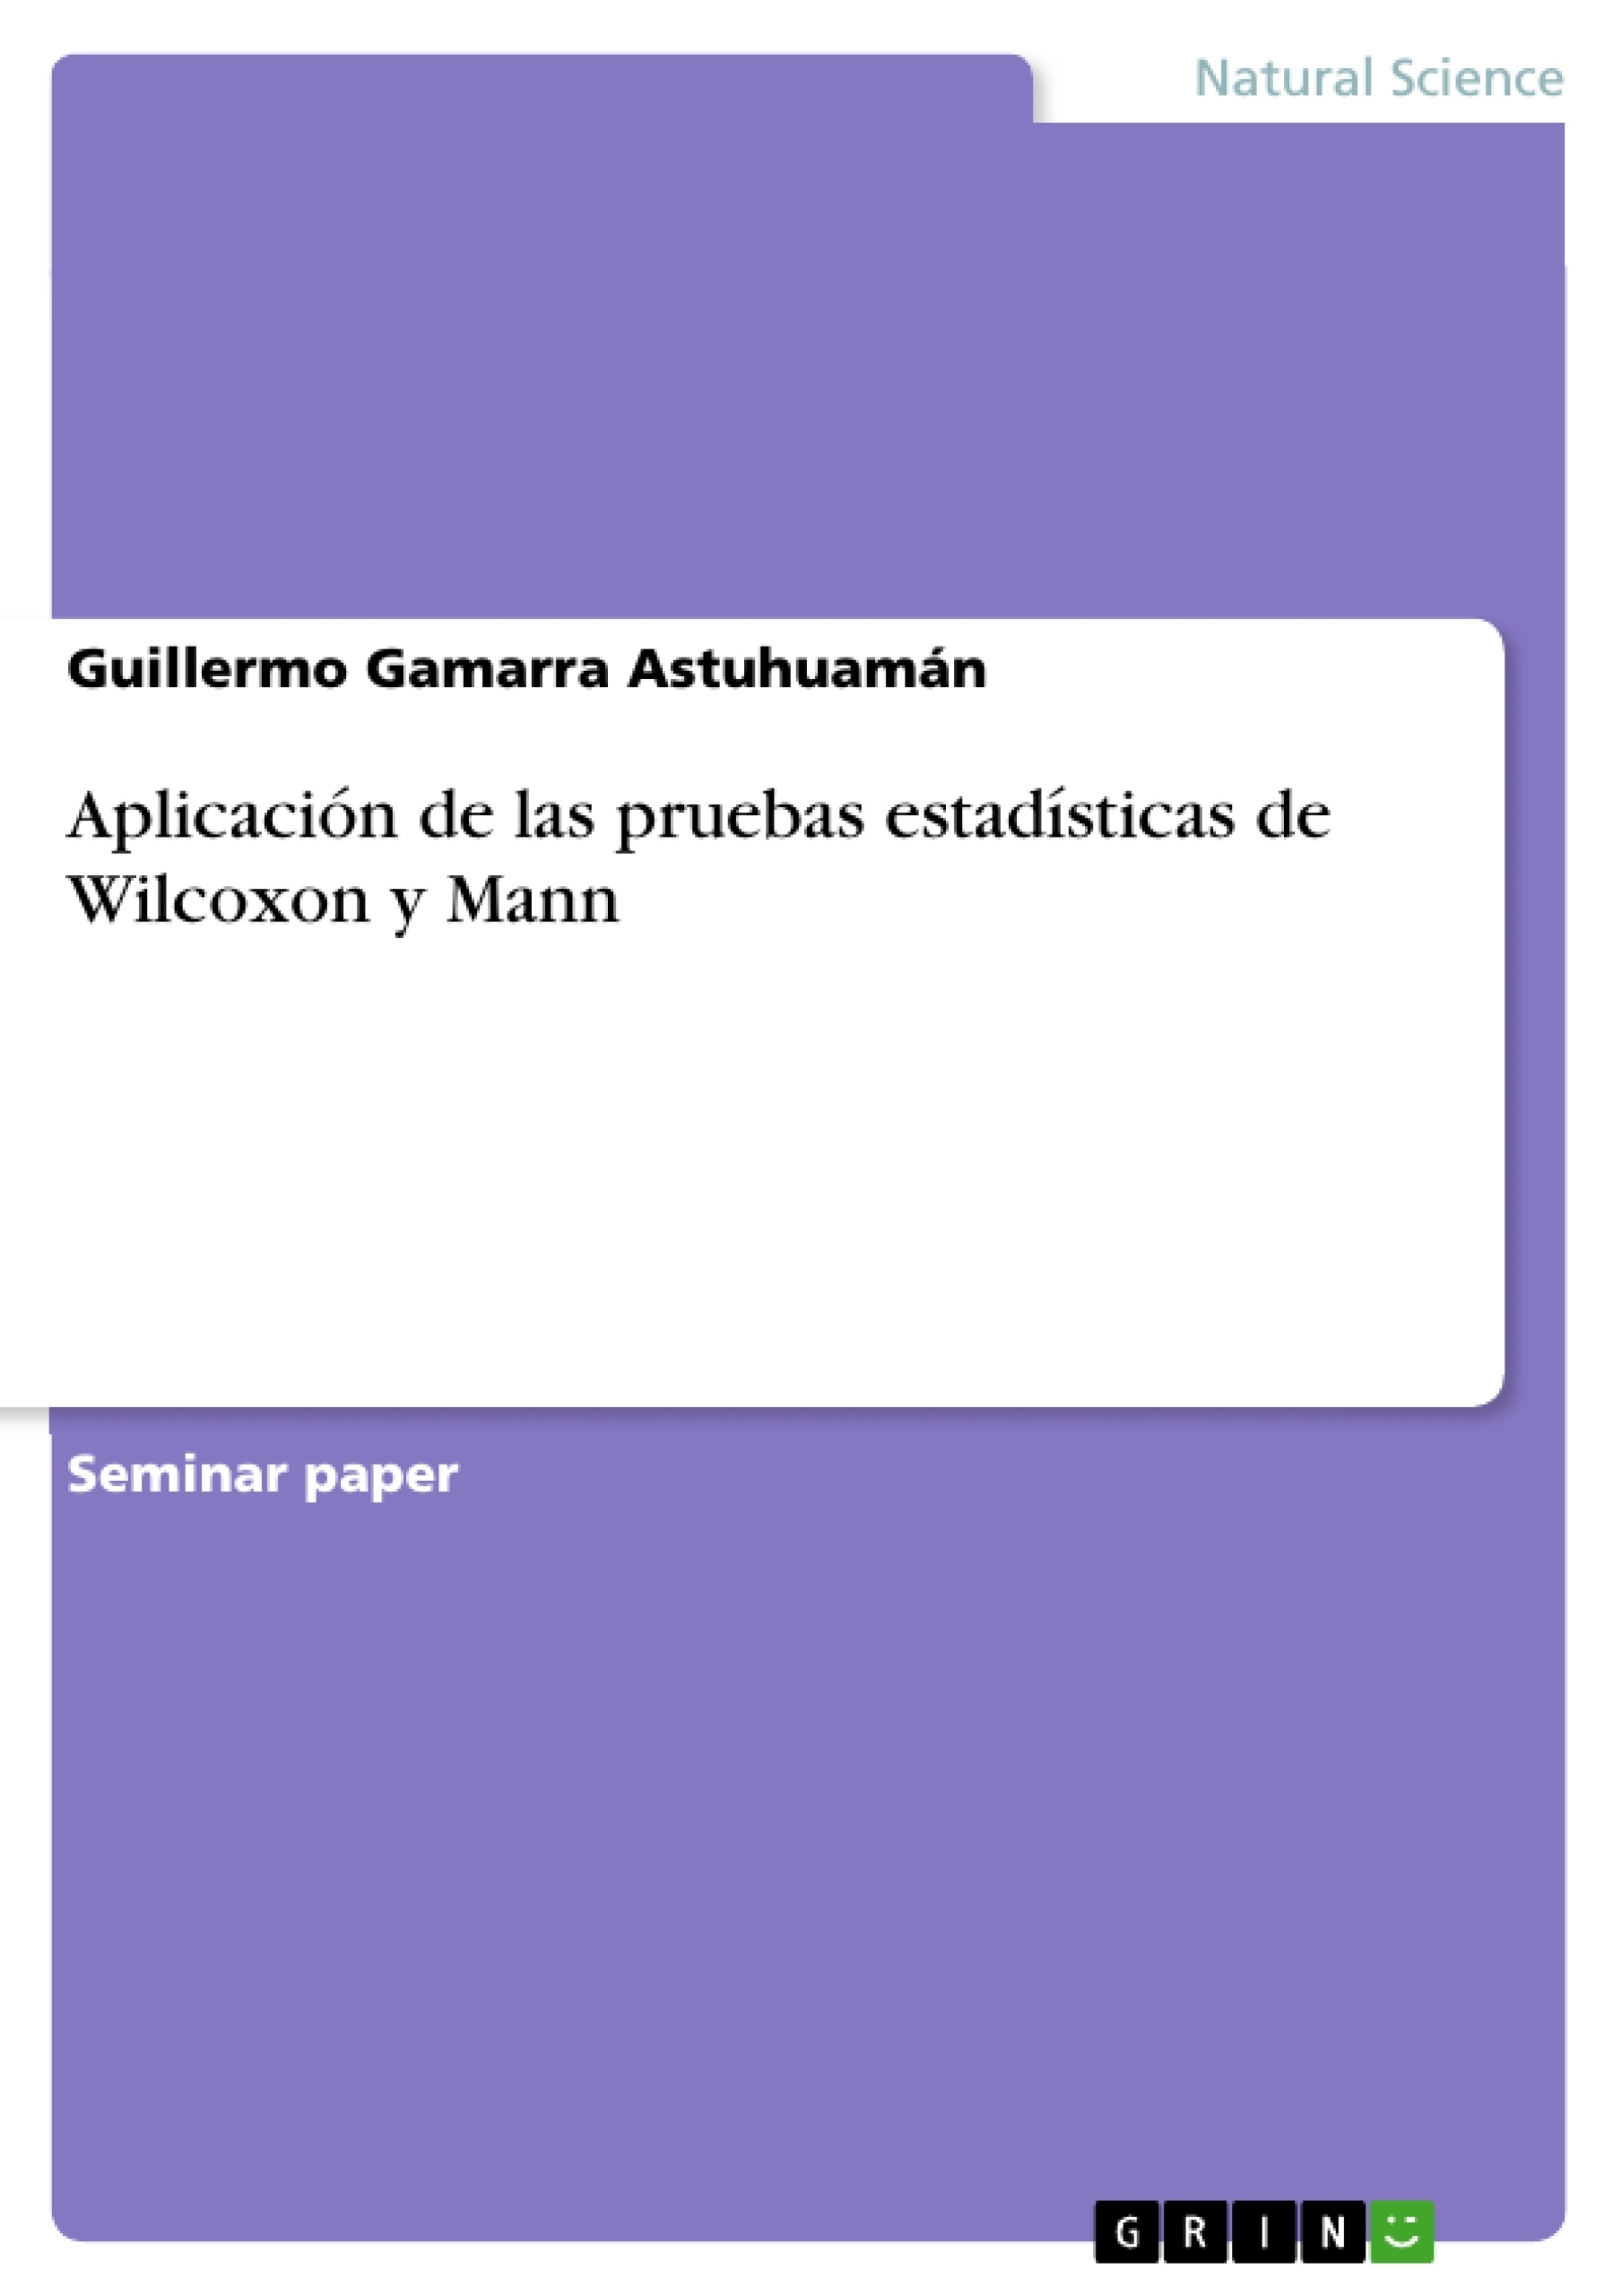 Título: Aplicación de las pruebas estadísticas de Wilcoxon y Mann